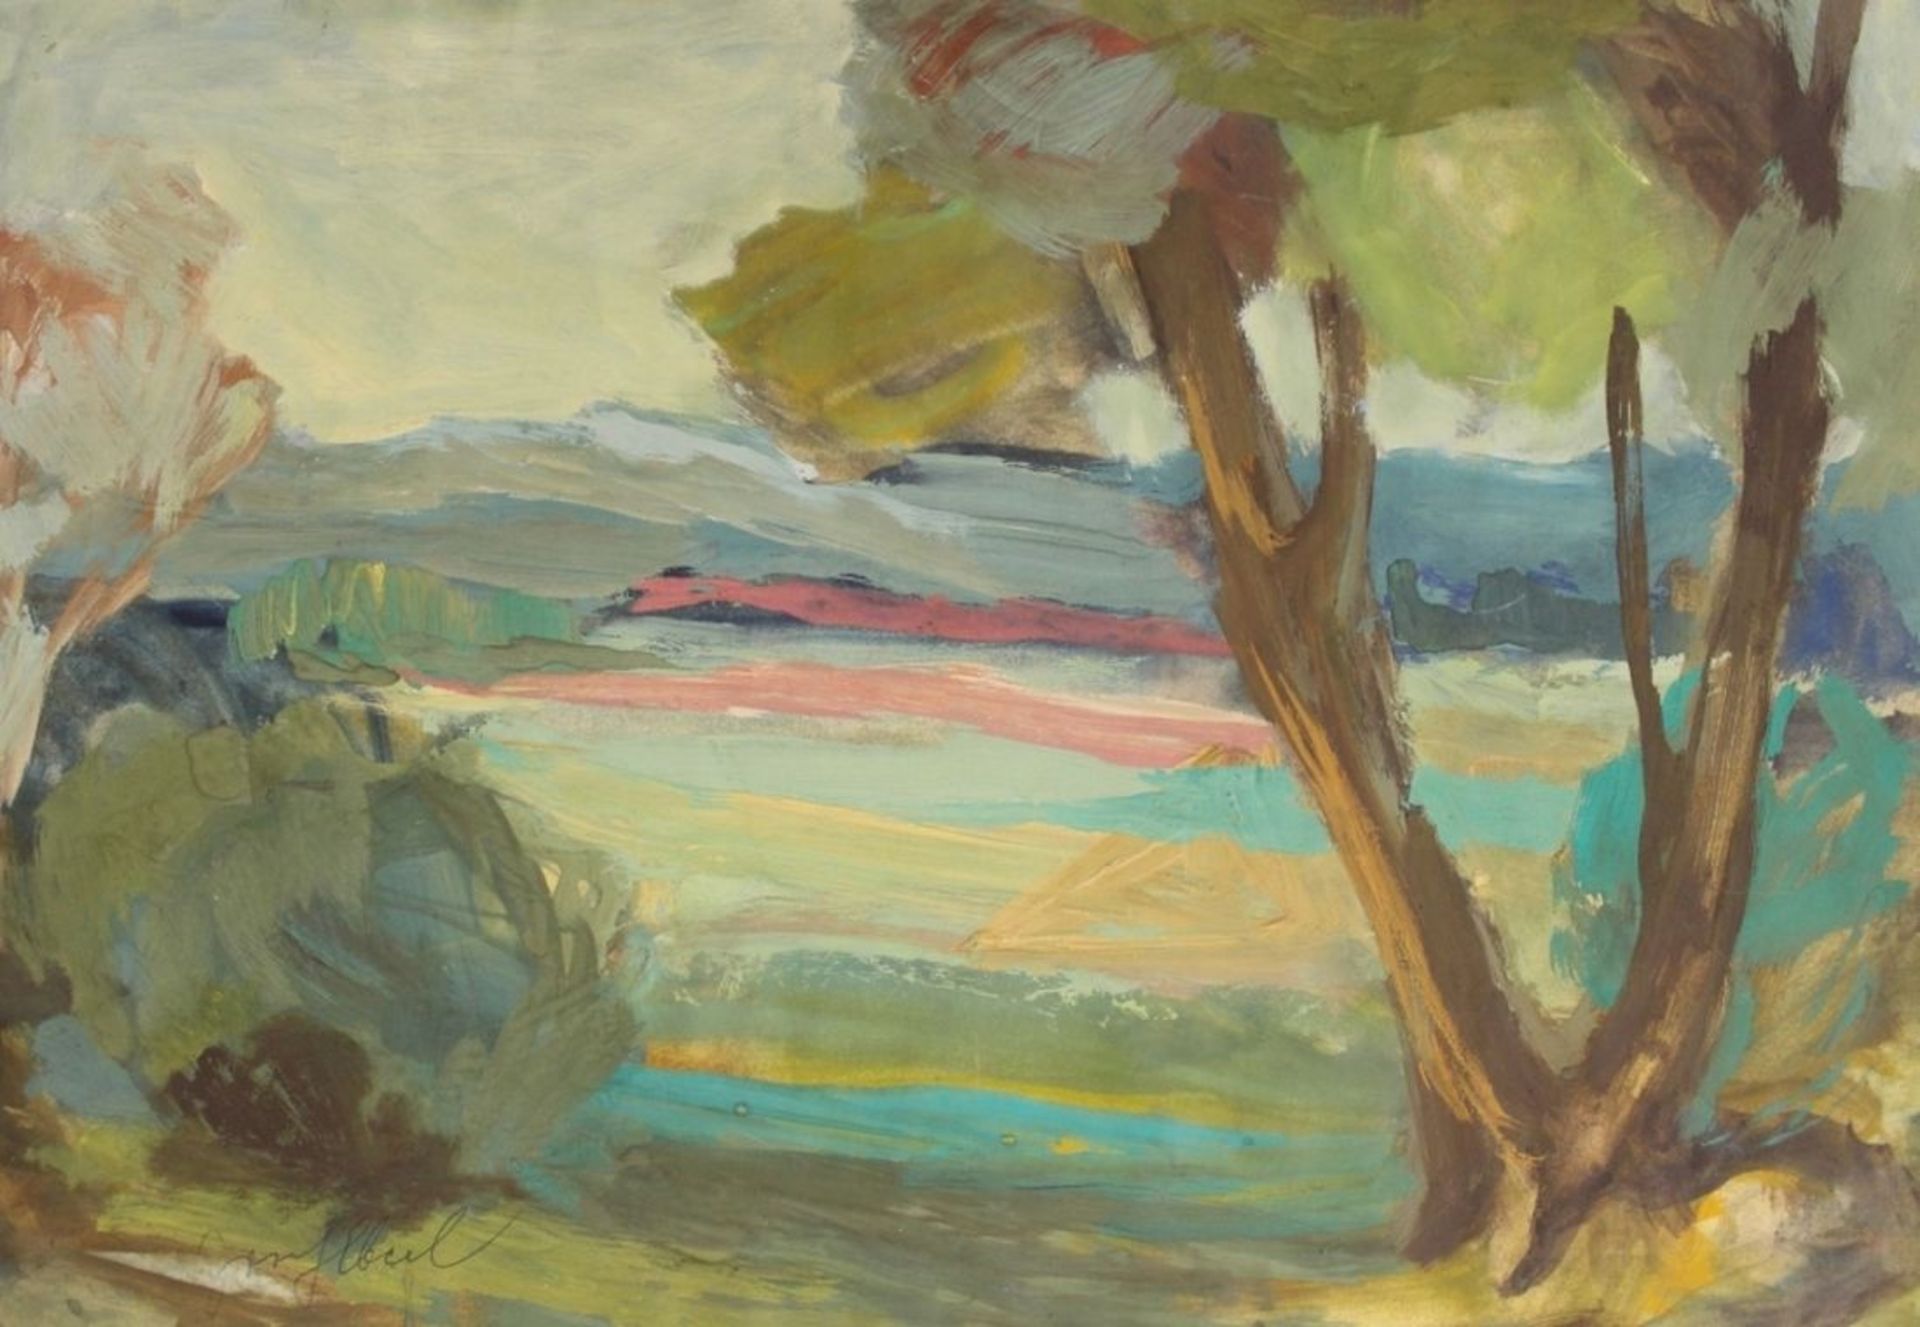 Aquarell - Josef Eberl (1916-1989 Straubing) "Landschaft", l.u. signiert, deckende Farben auf